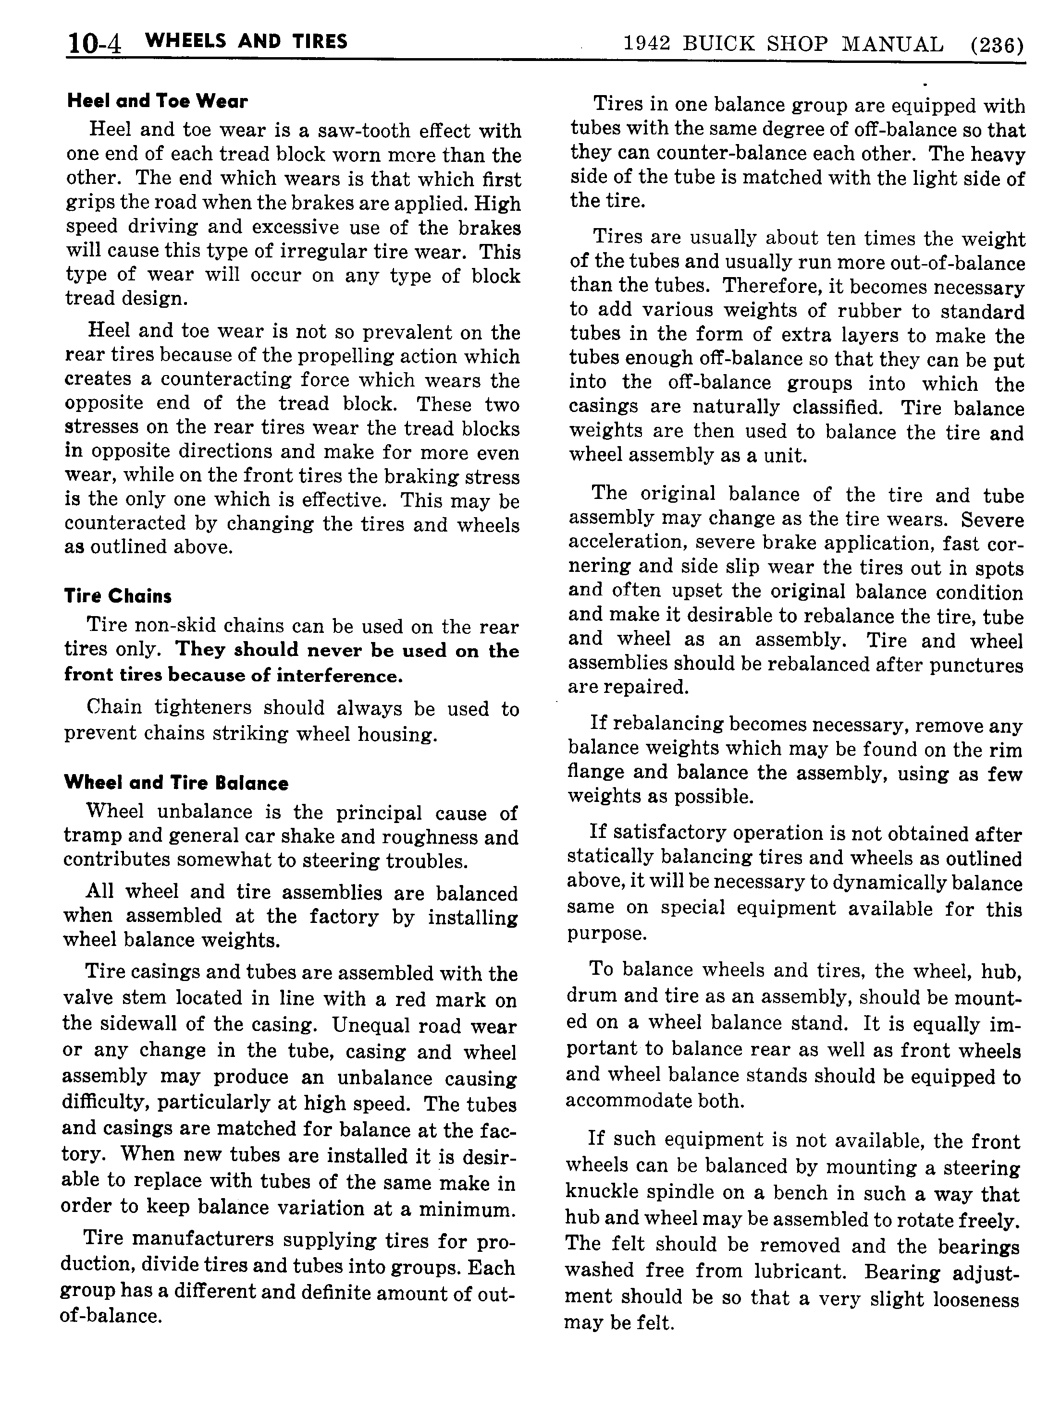 n_11 1942 Buick Shop Manual - Wheels & Tires-004-004.jpg